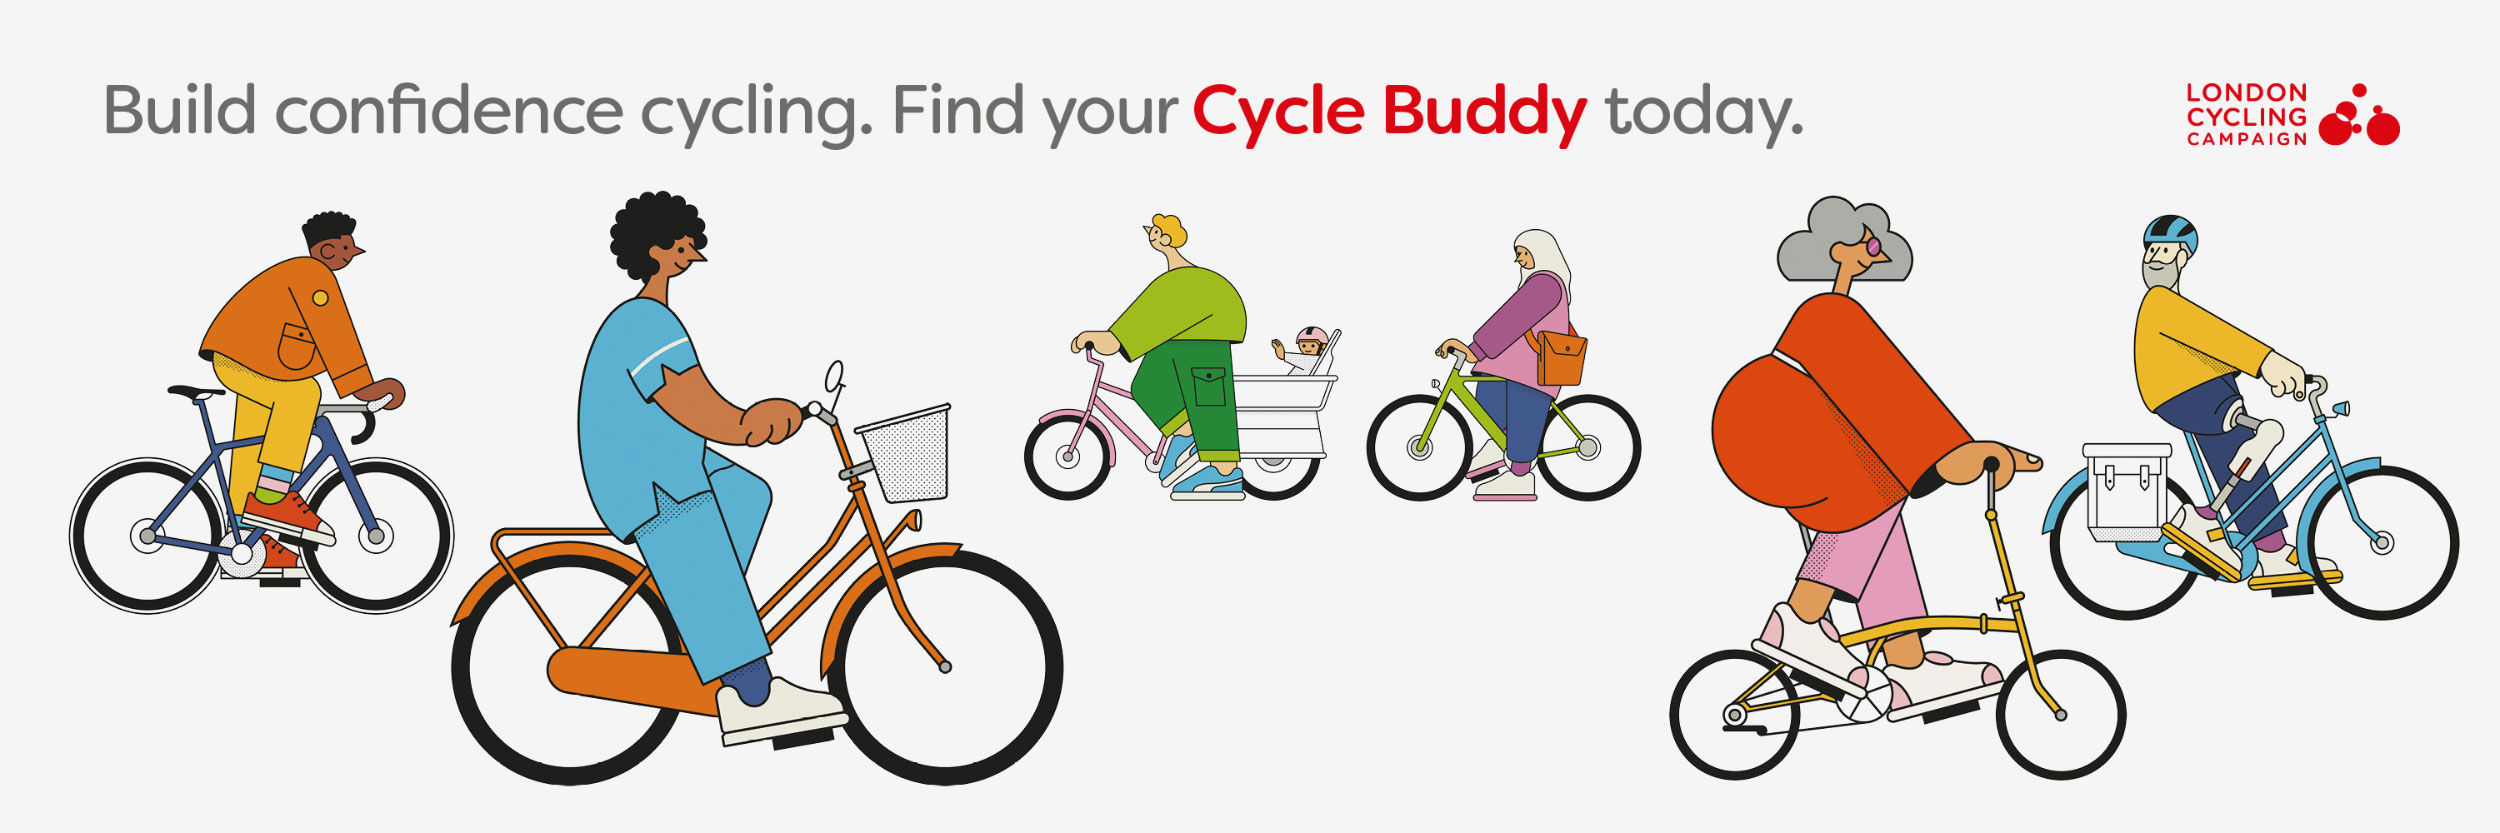 lcc23_cyclebuddies_social